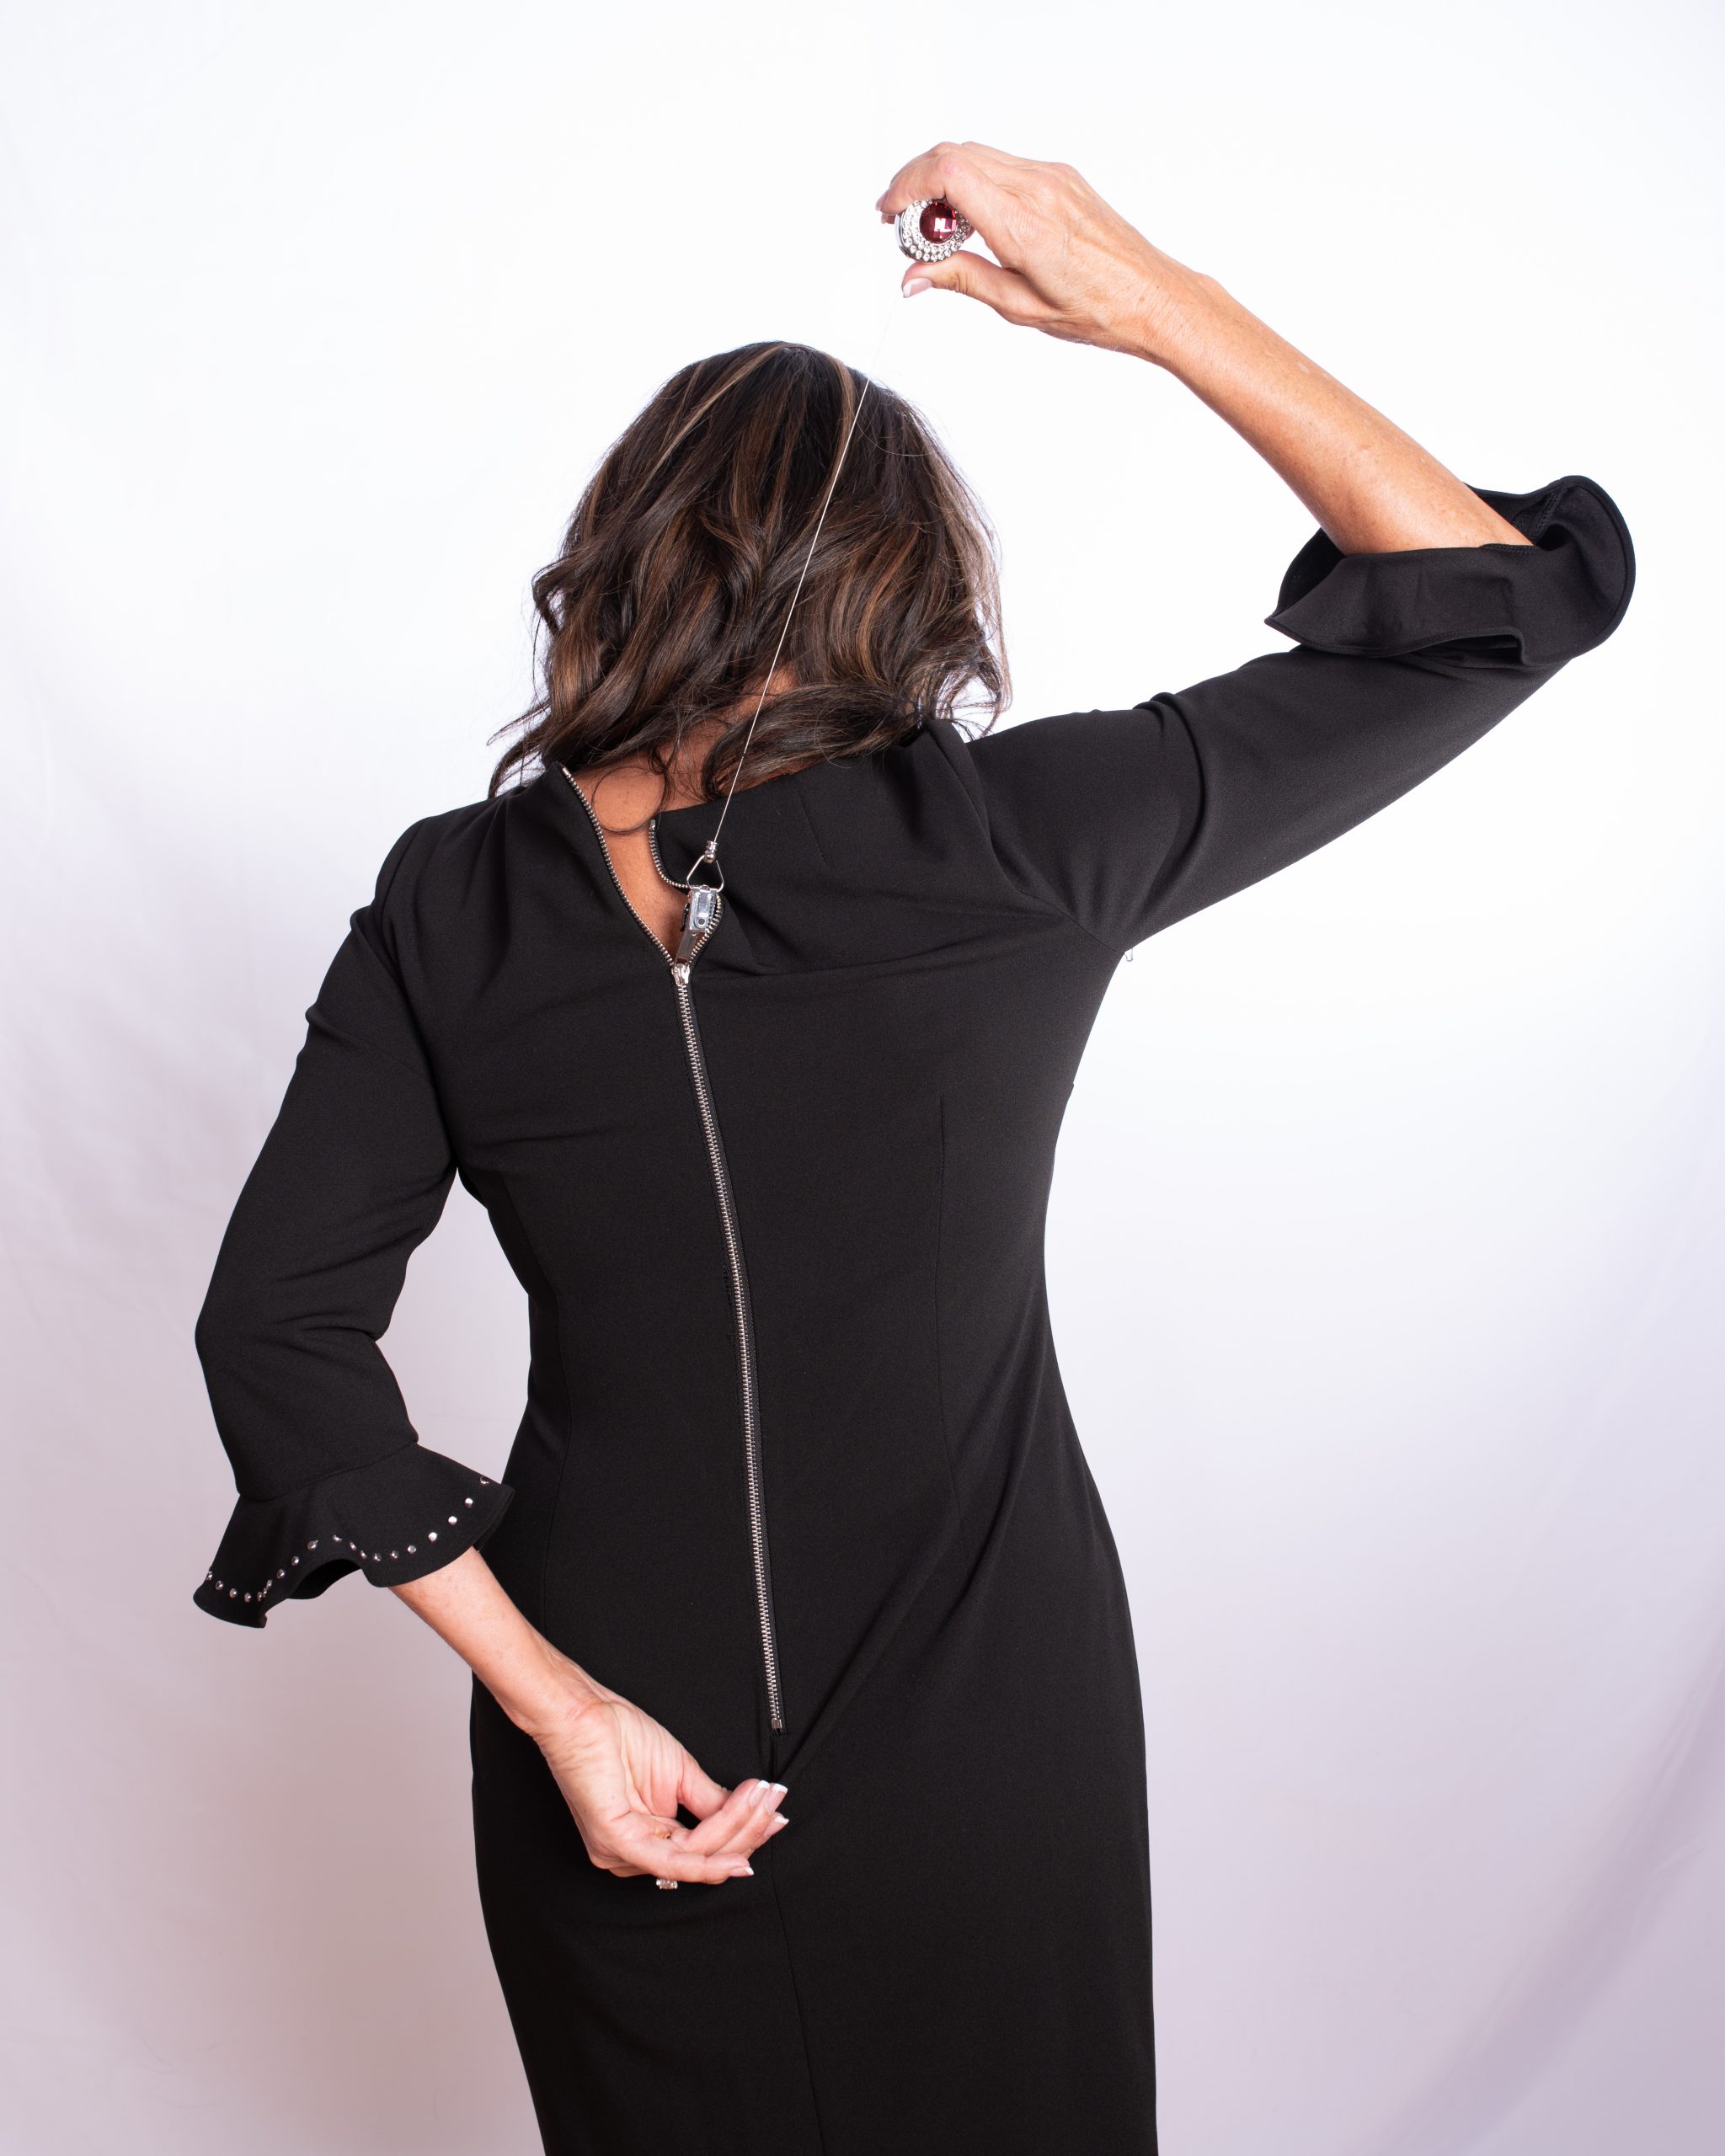 The Original ZipMeUp  Dress Zipper Helper Aid Assistance for Women